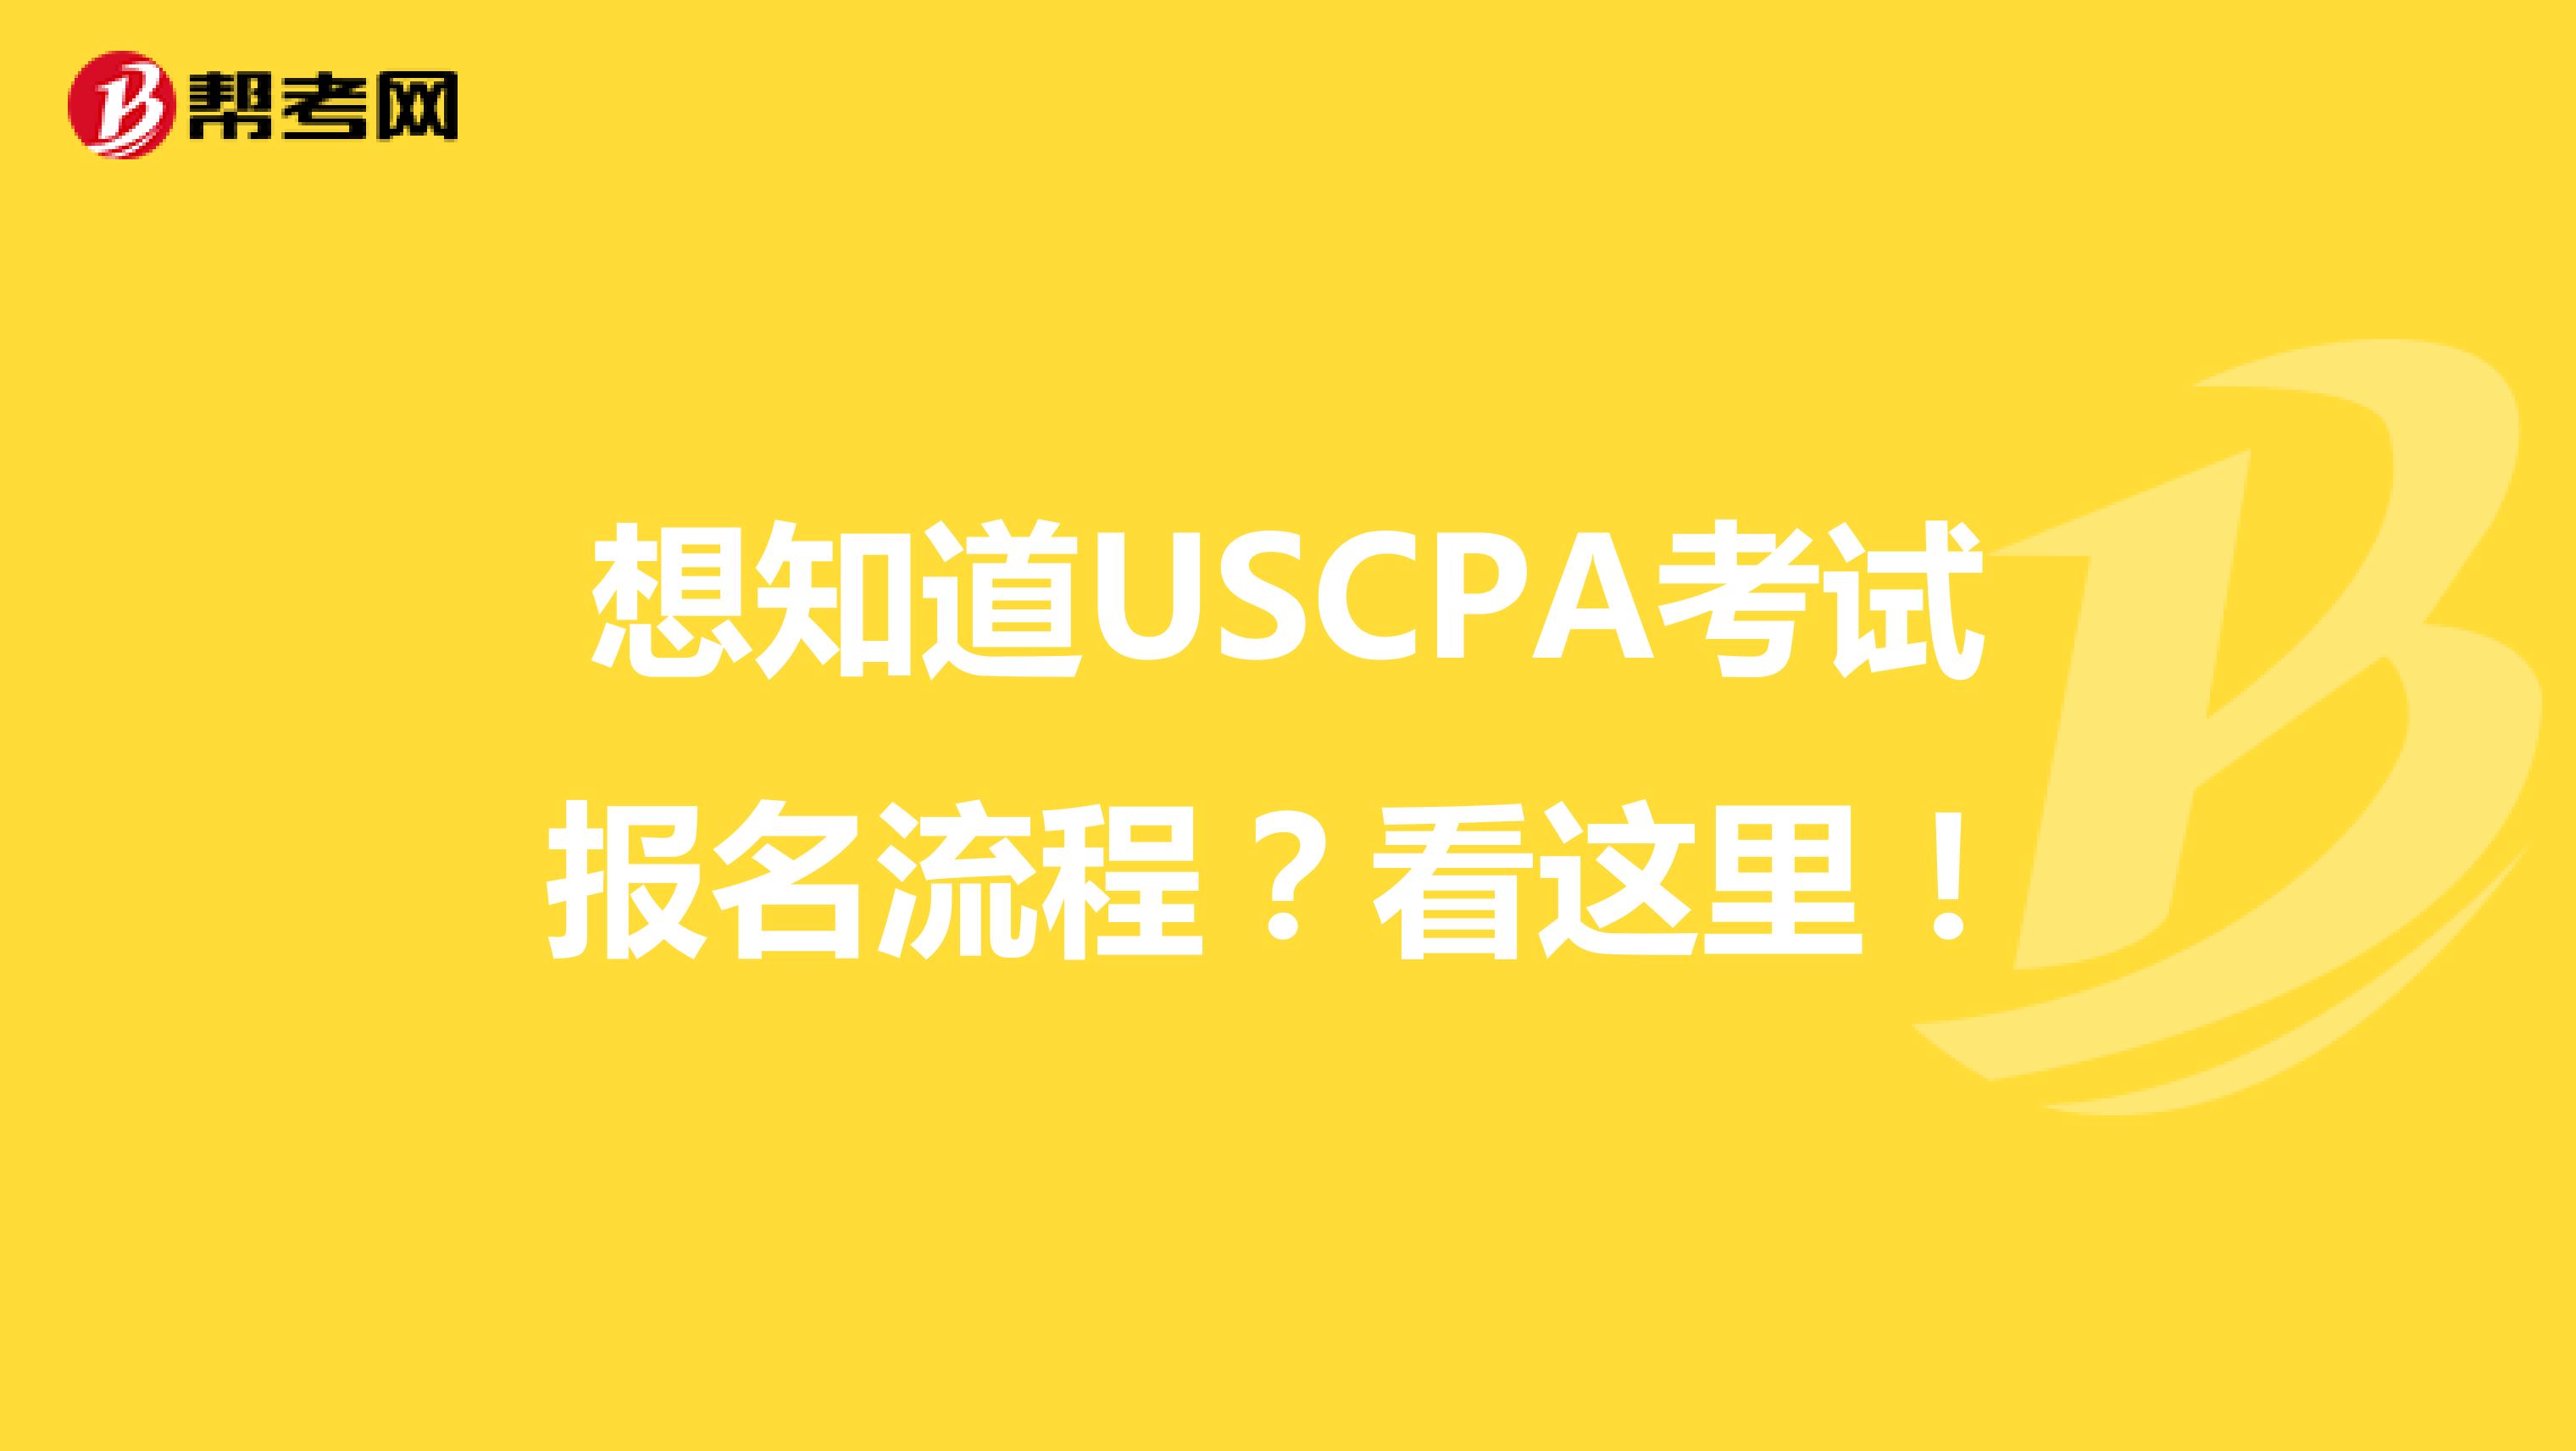 想知道USCPA考试报名流程？看这里！